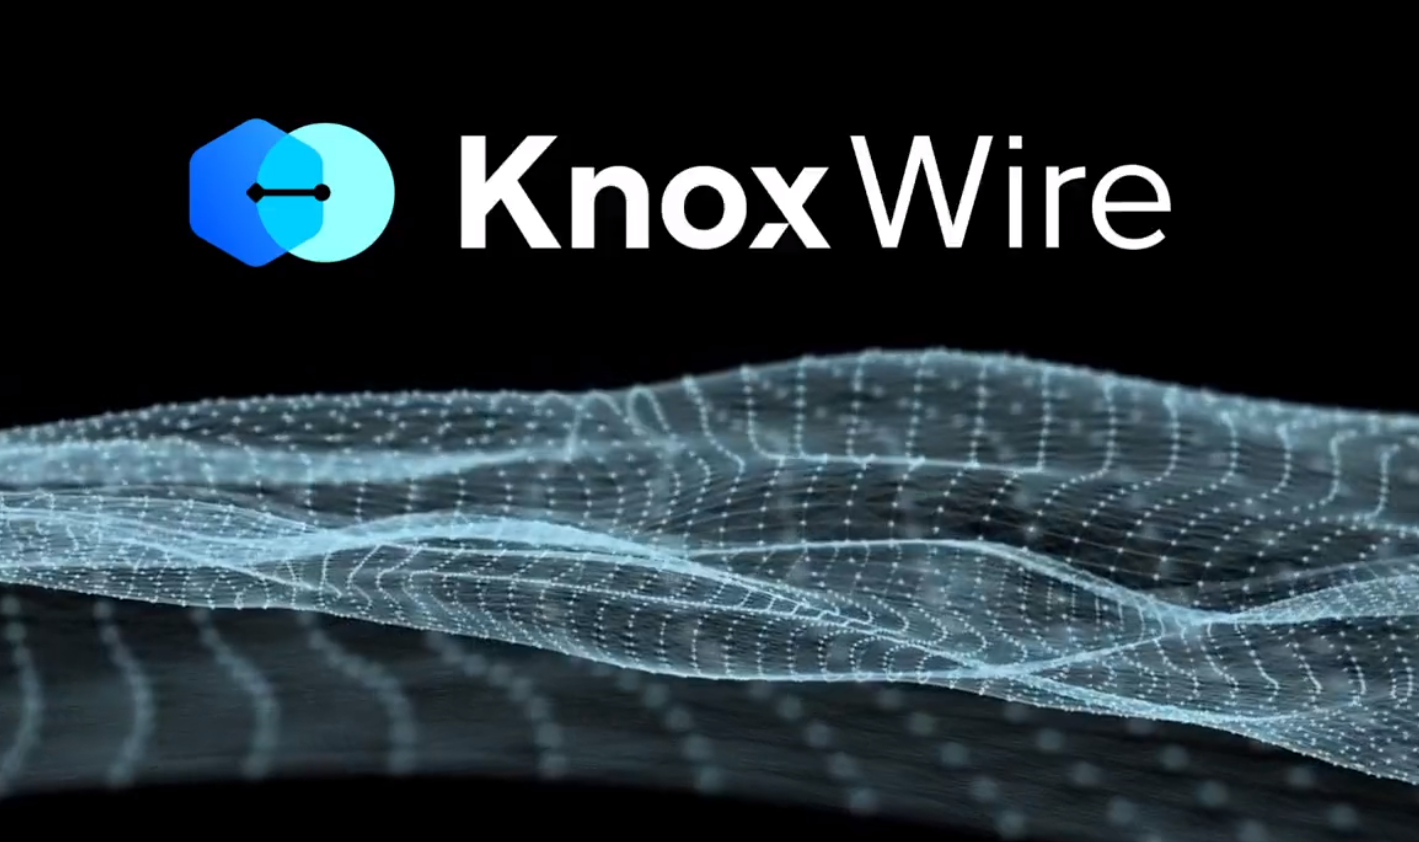 ViMoney: Knox Wire trở thành mạng lưới lớn thứ 3 cho thanh toán xuyên biên giới 